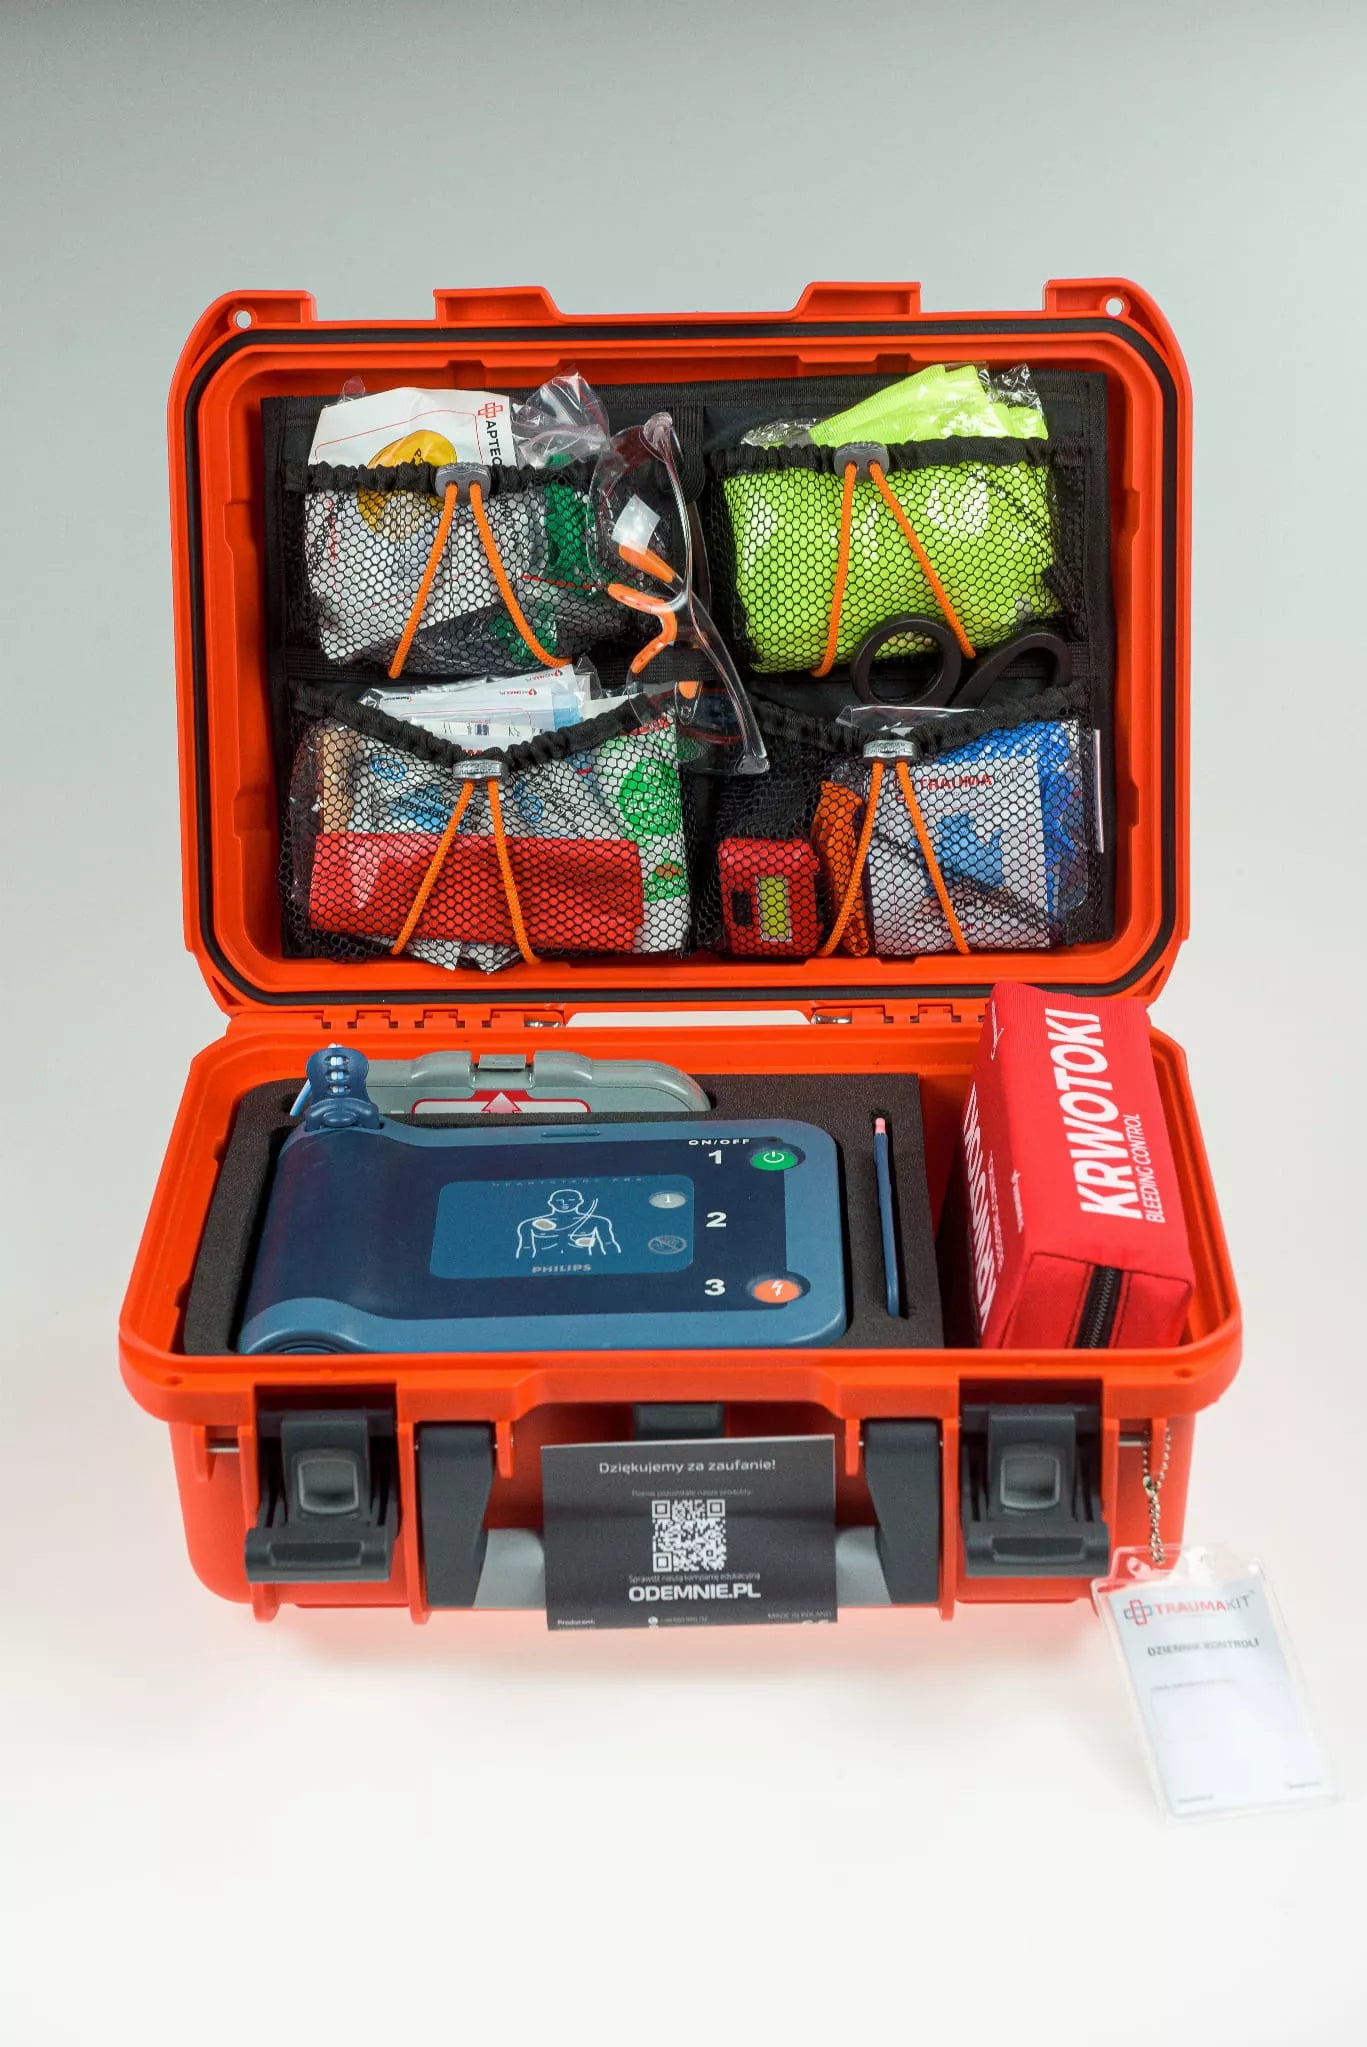 Philips HeartStart FRx defibrillator in PELI 1200 Case